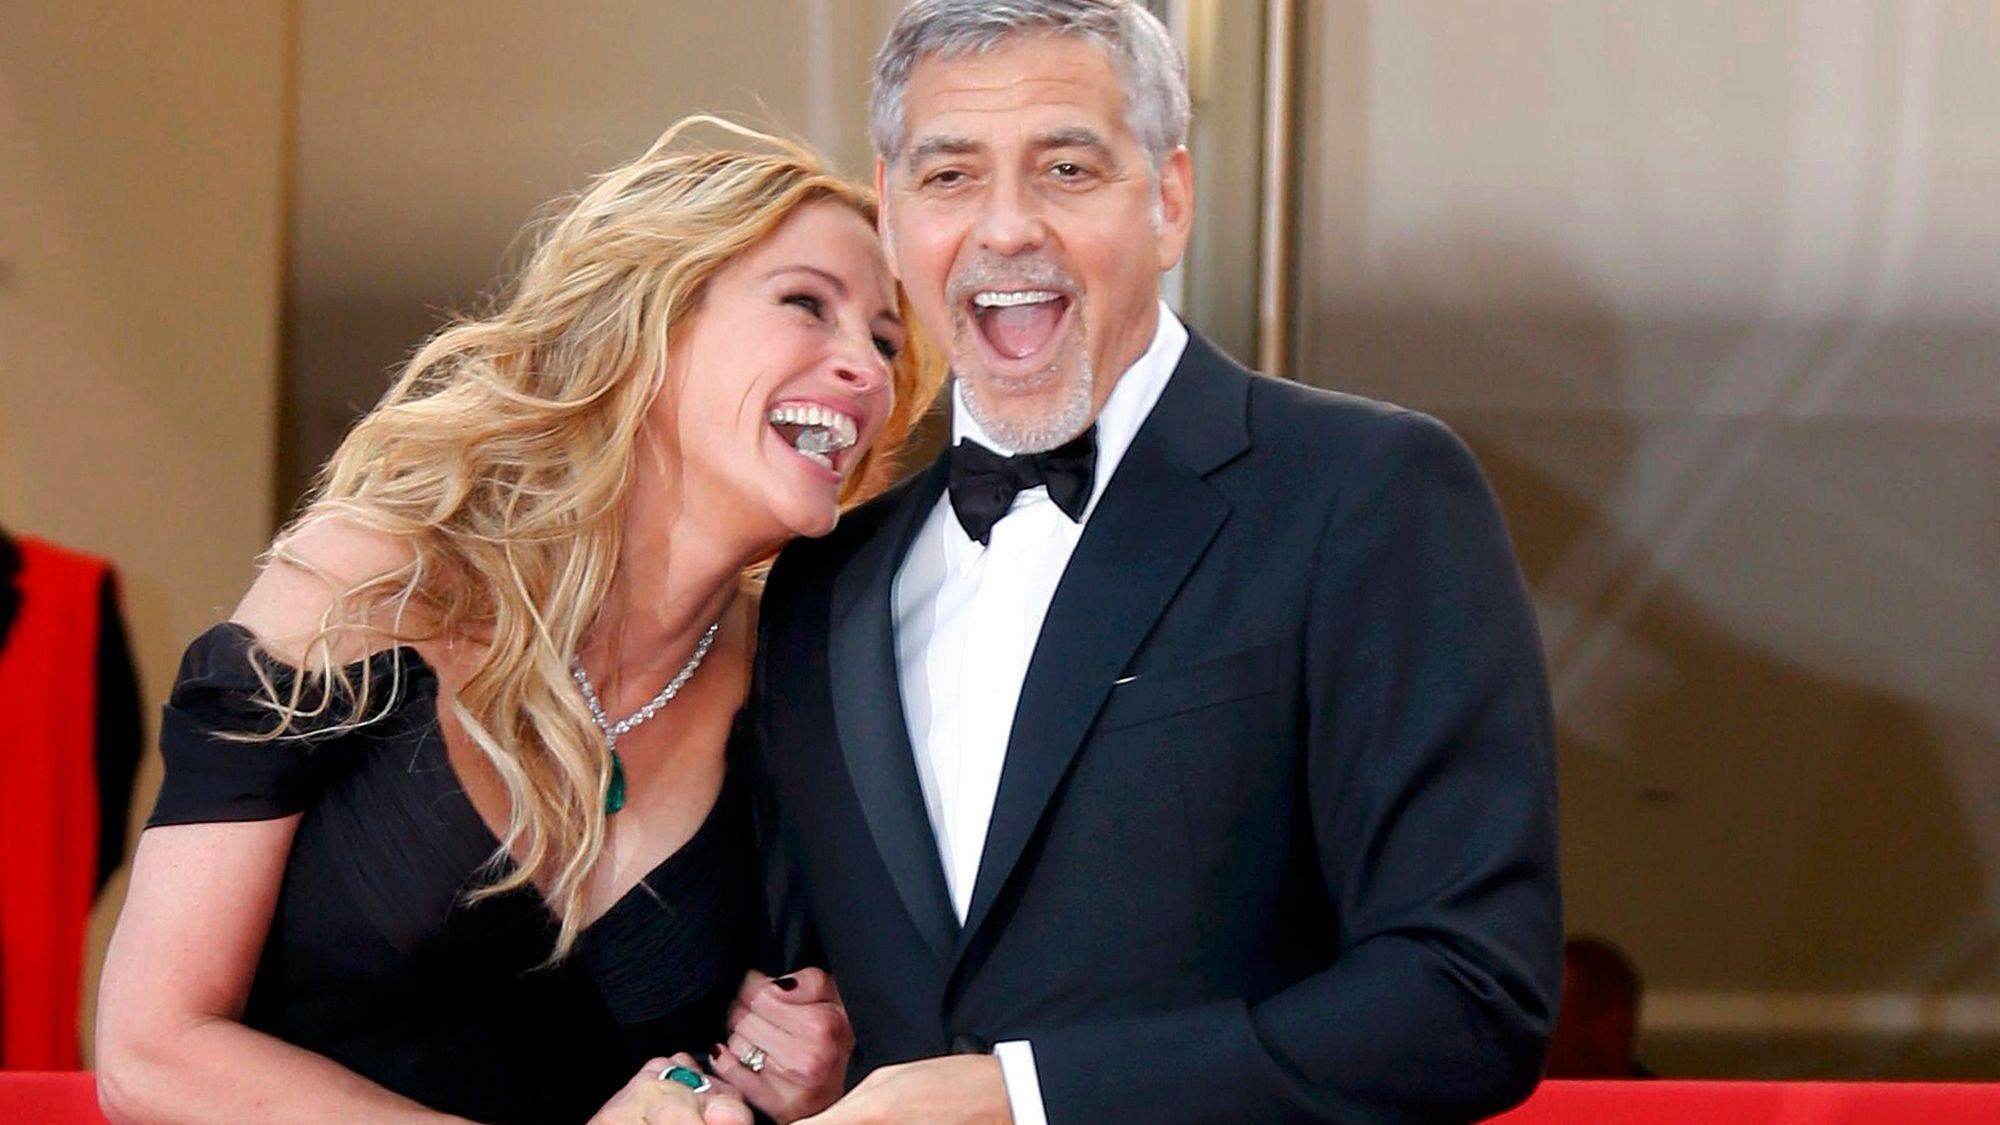 George Clooney y Julia Roberts volverán a reunirse en la gran pantalla